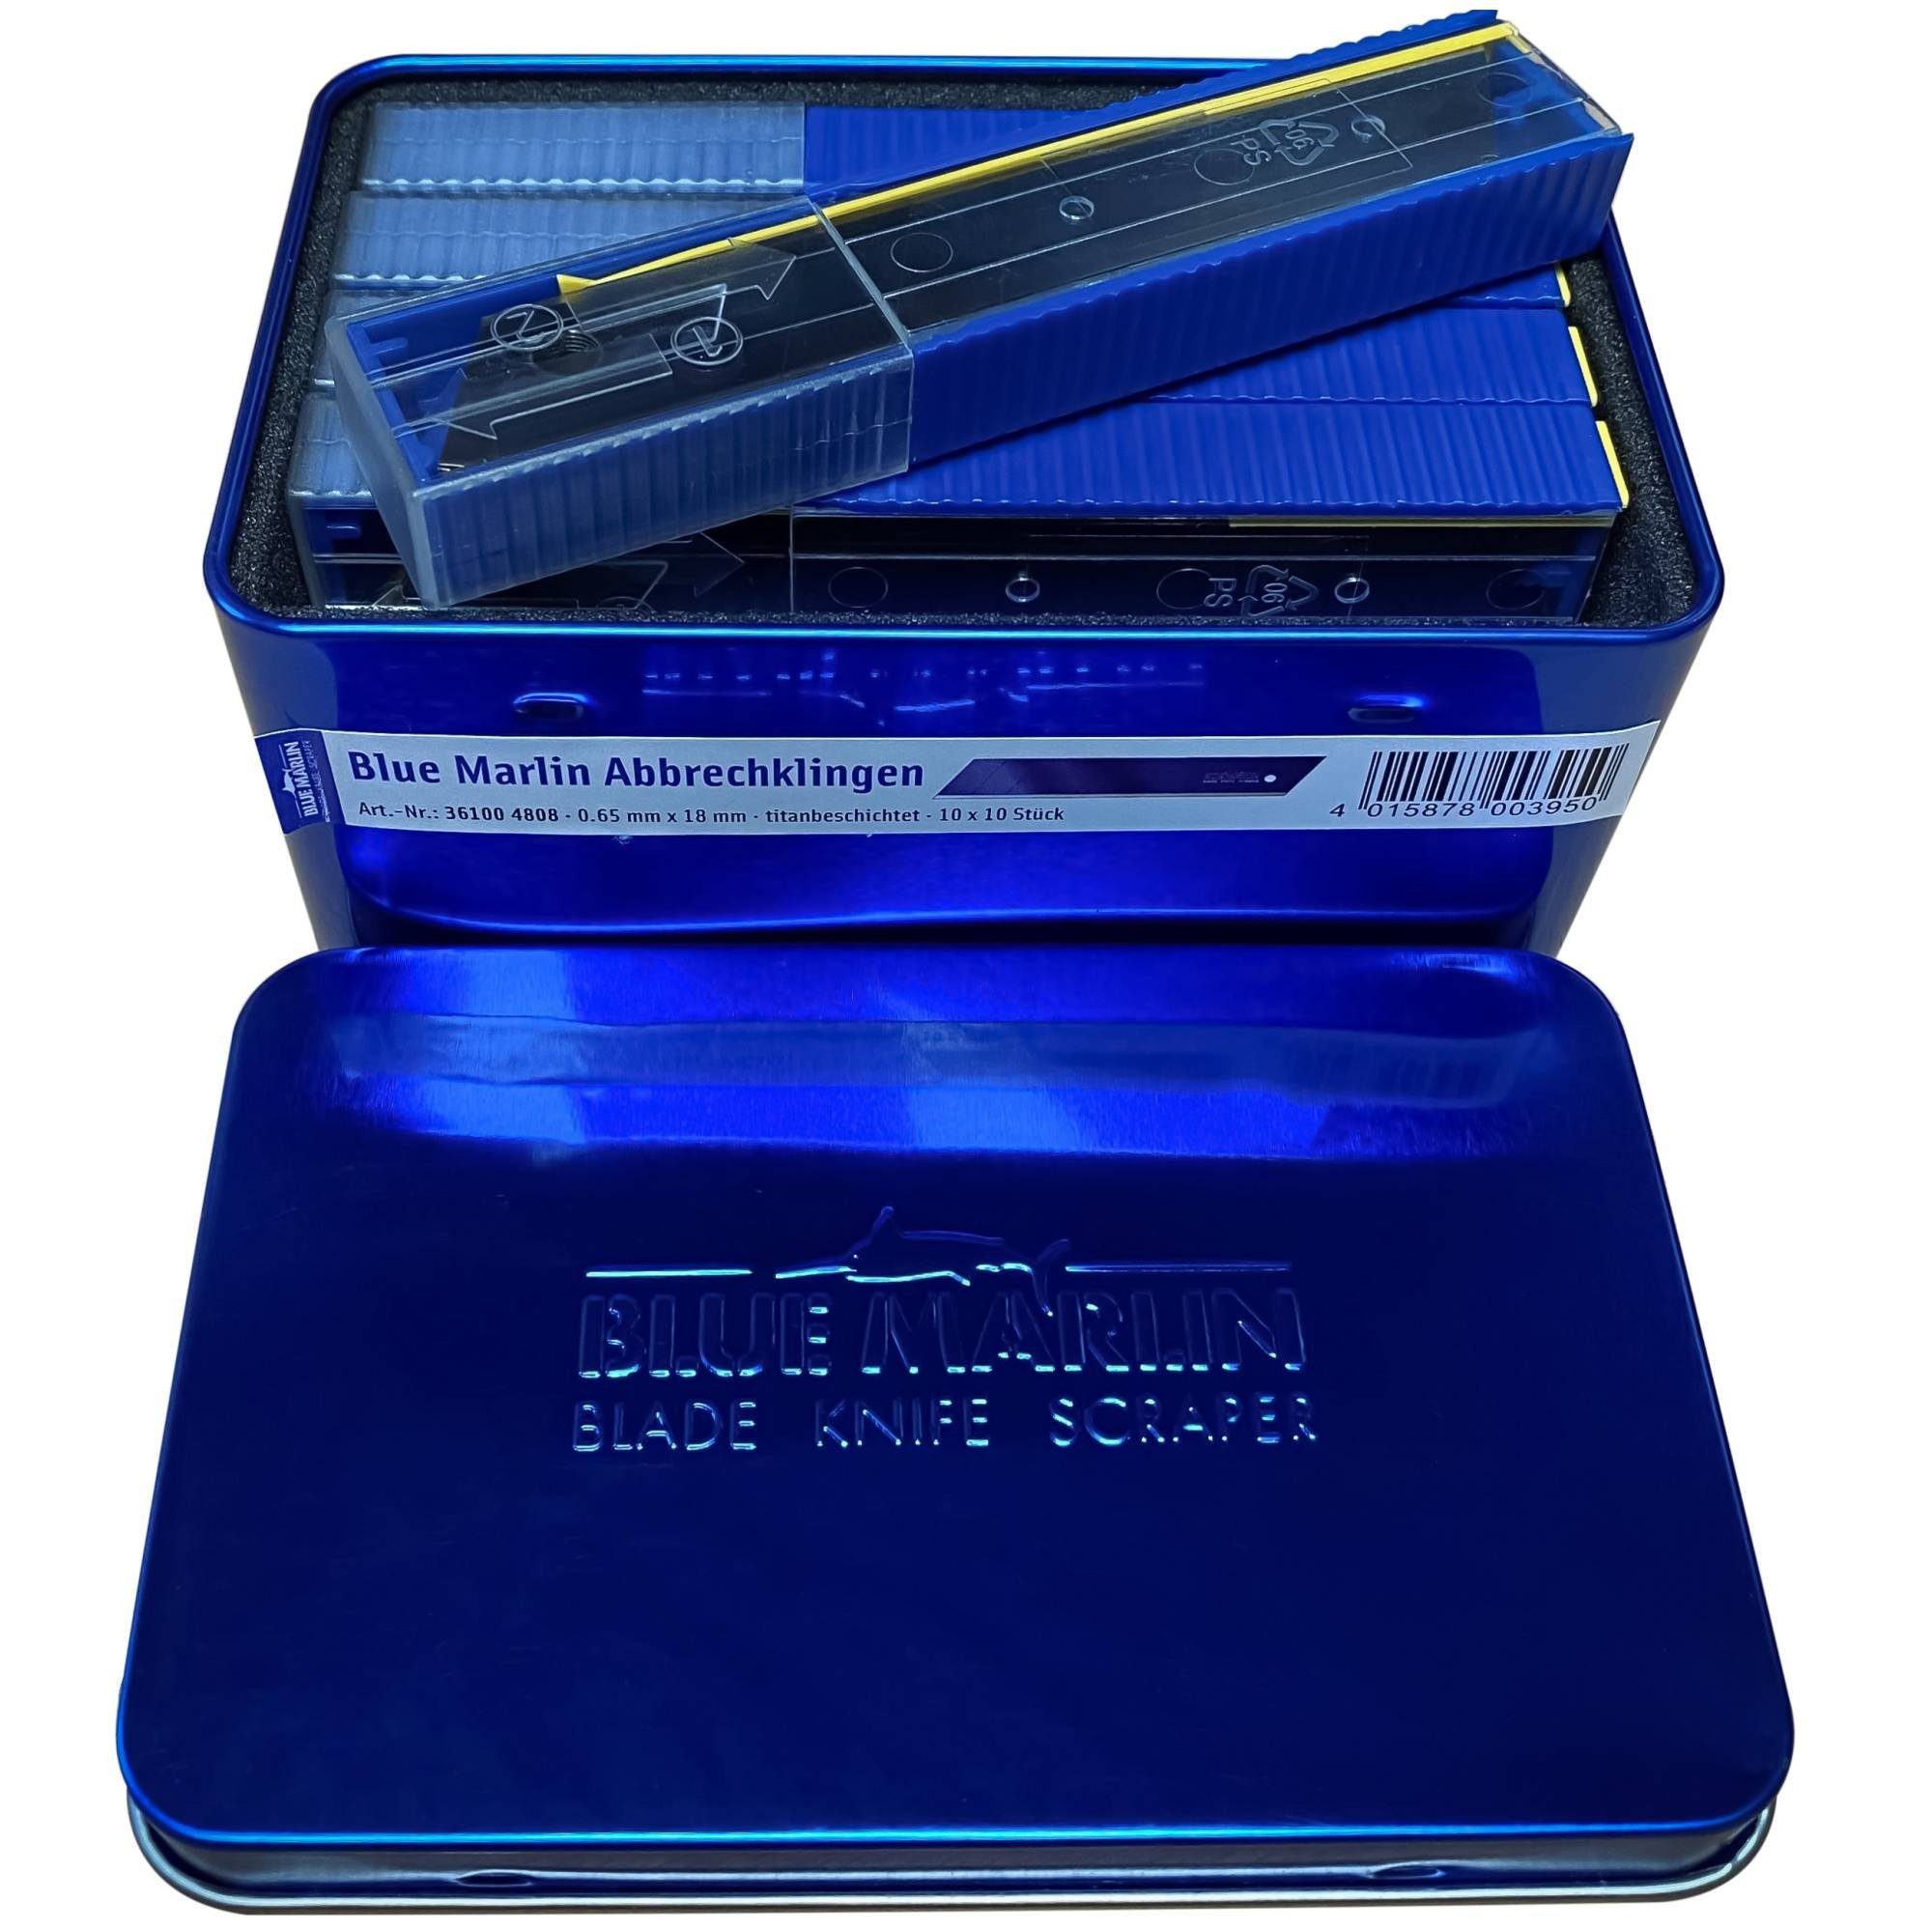 acerto® Cuttermesser Blue Marlin Abbrechklingen 0,65x18mm, (10-tlg)